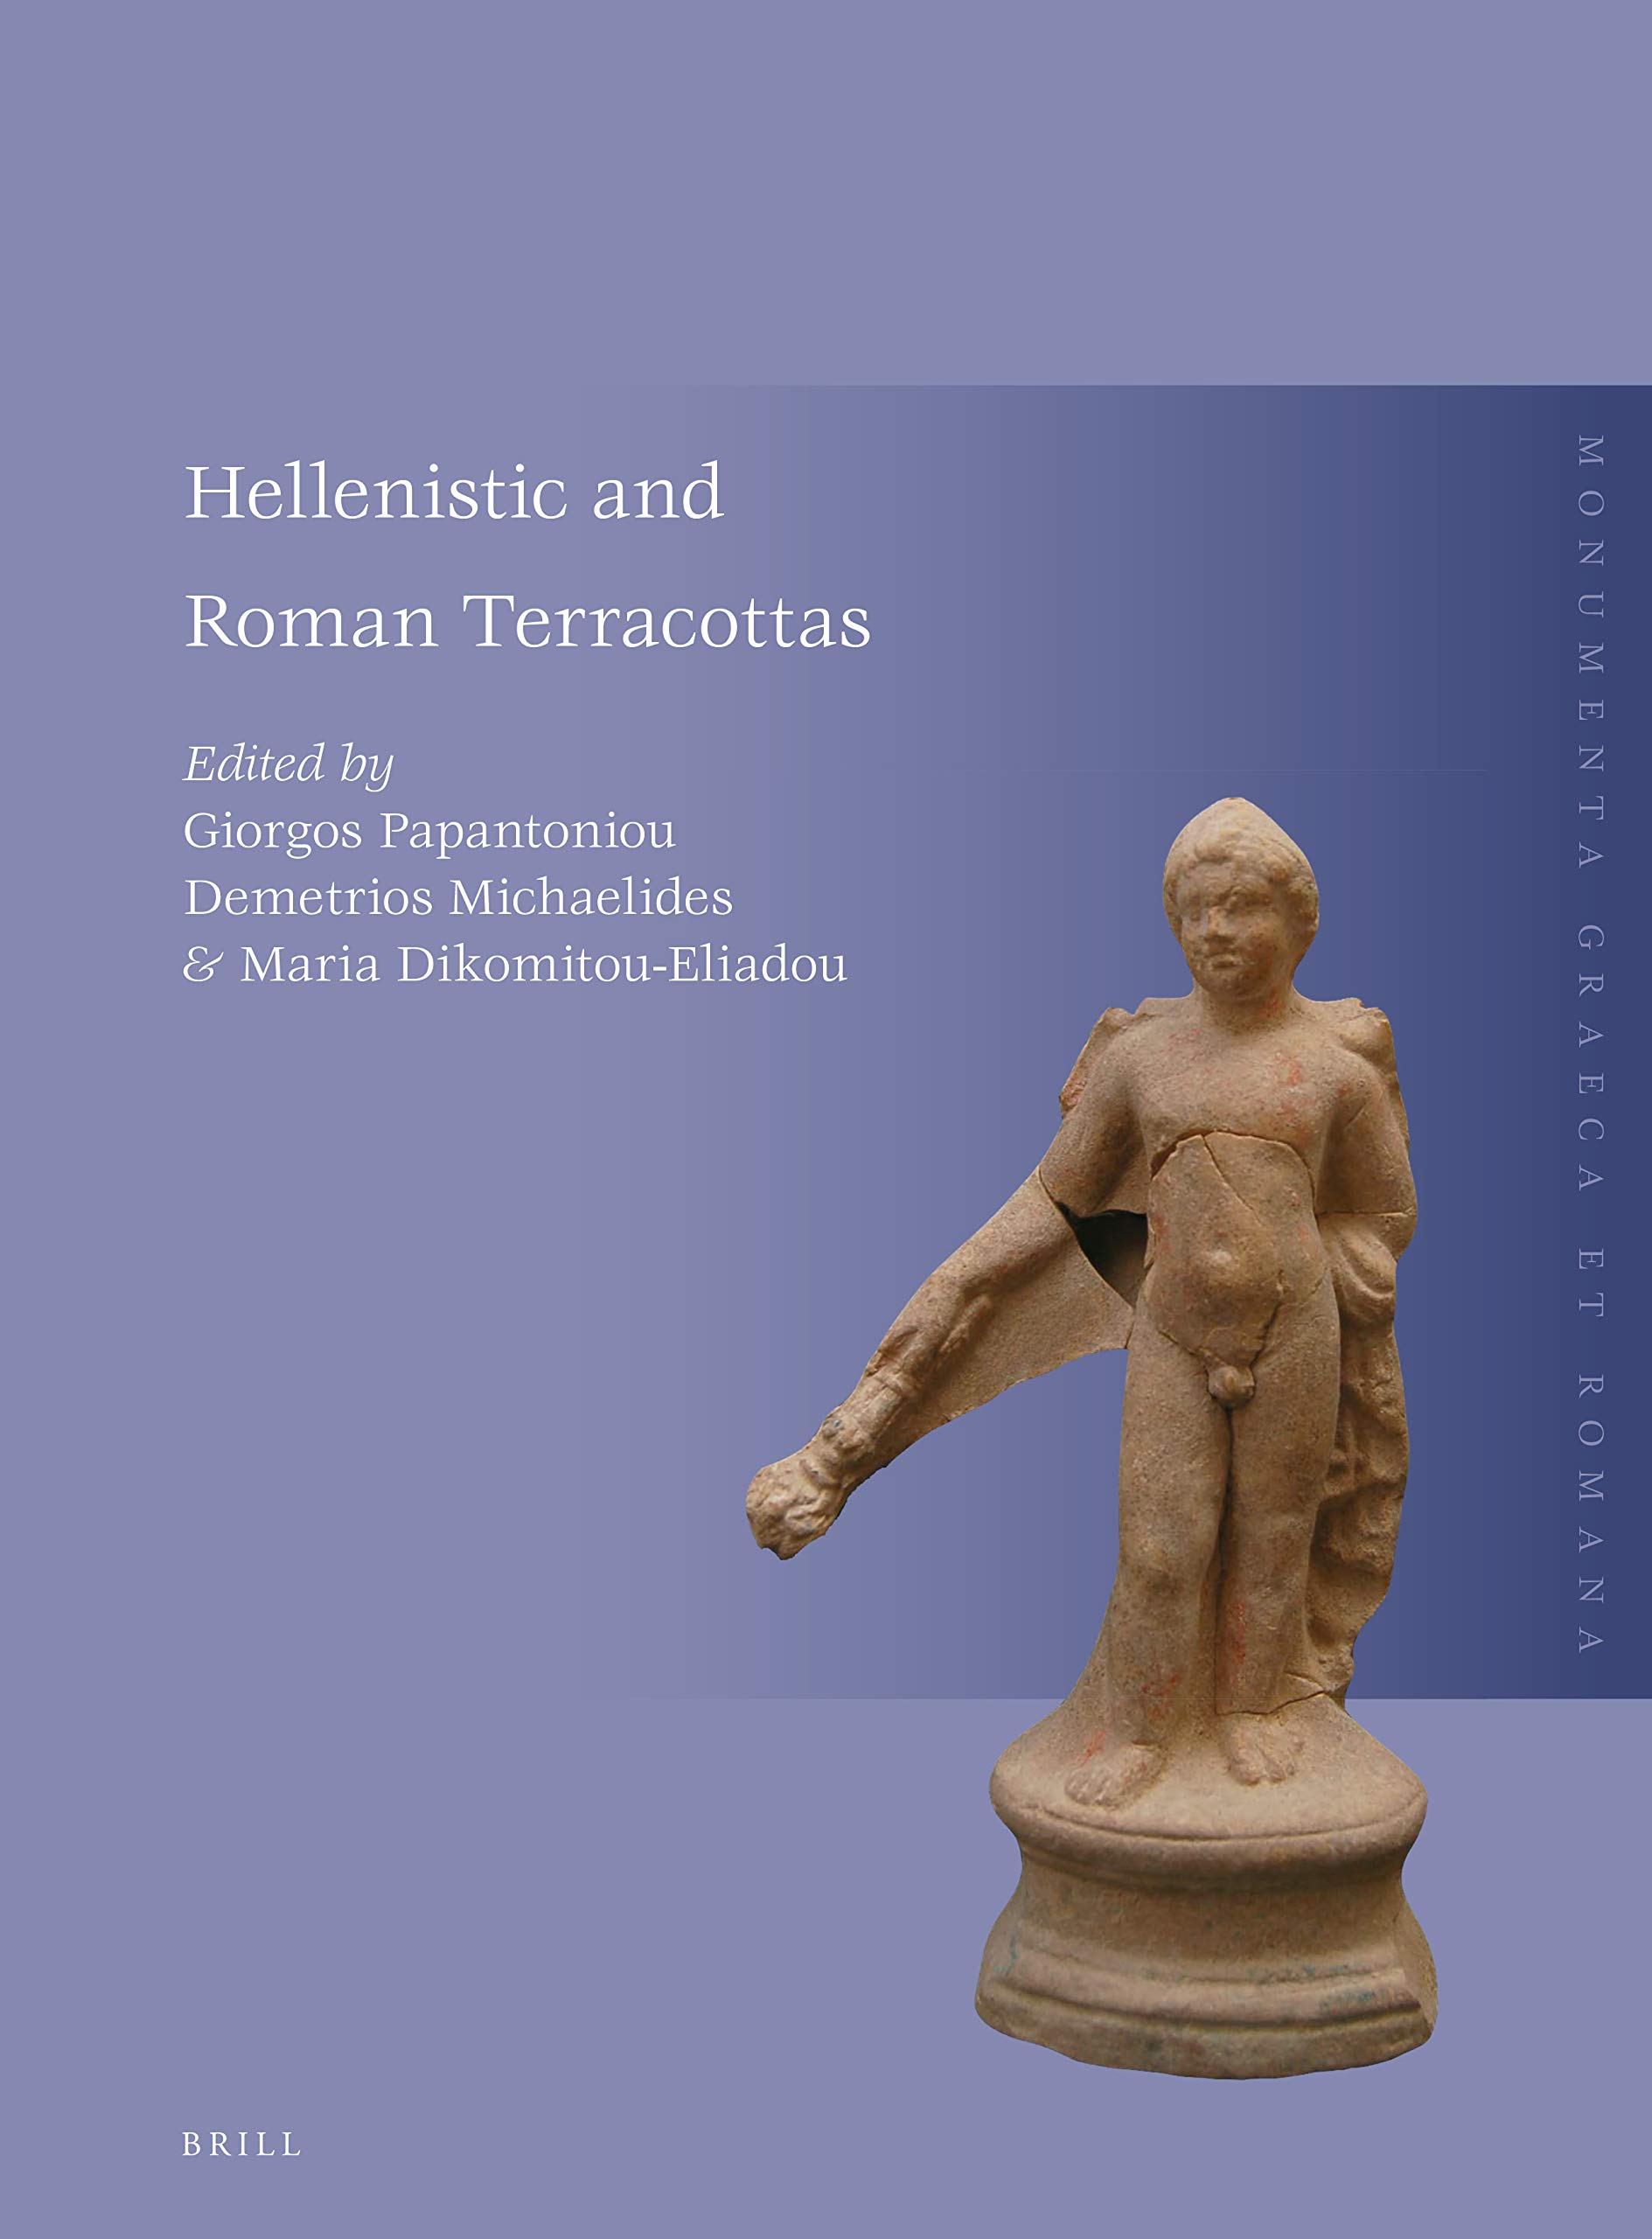 Papantoniou_Hellenistic and Roman Terracottas_2019